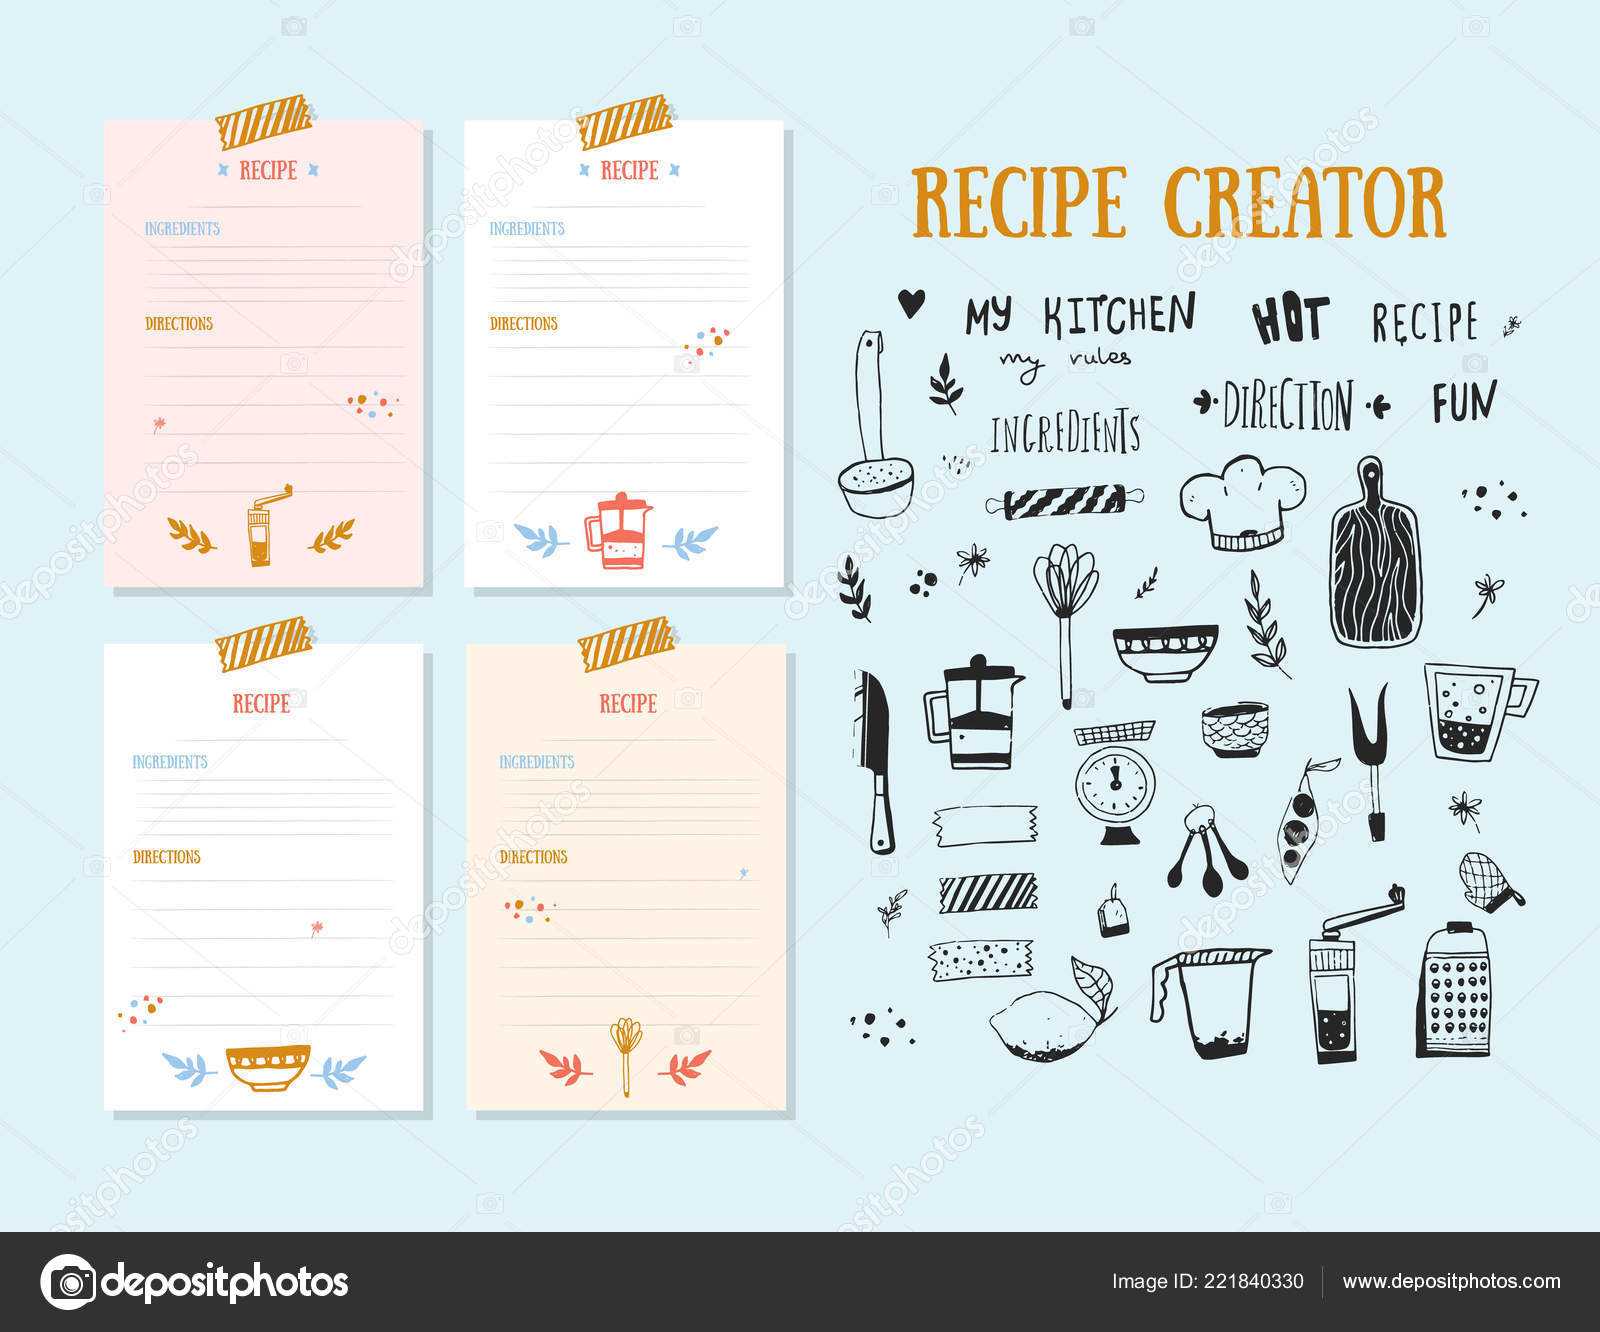 Cookbook Design Template | Modern Recipe Card Template Set Intended For Recipe Card Design Template